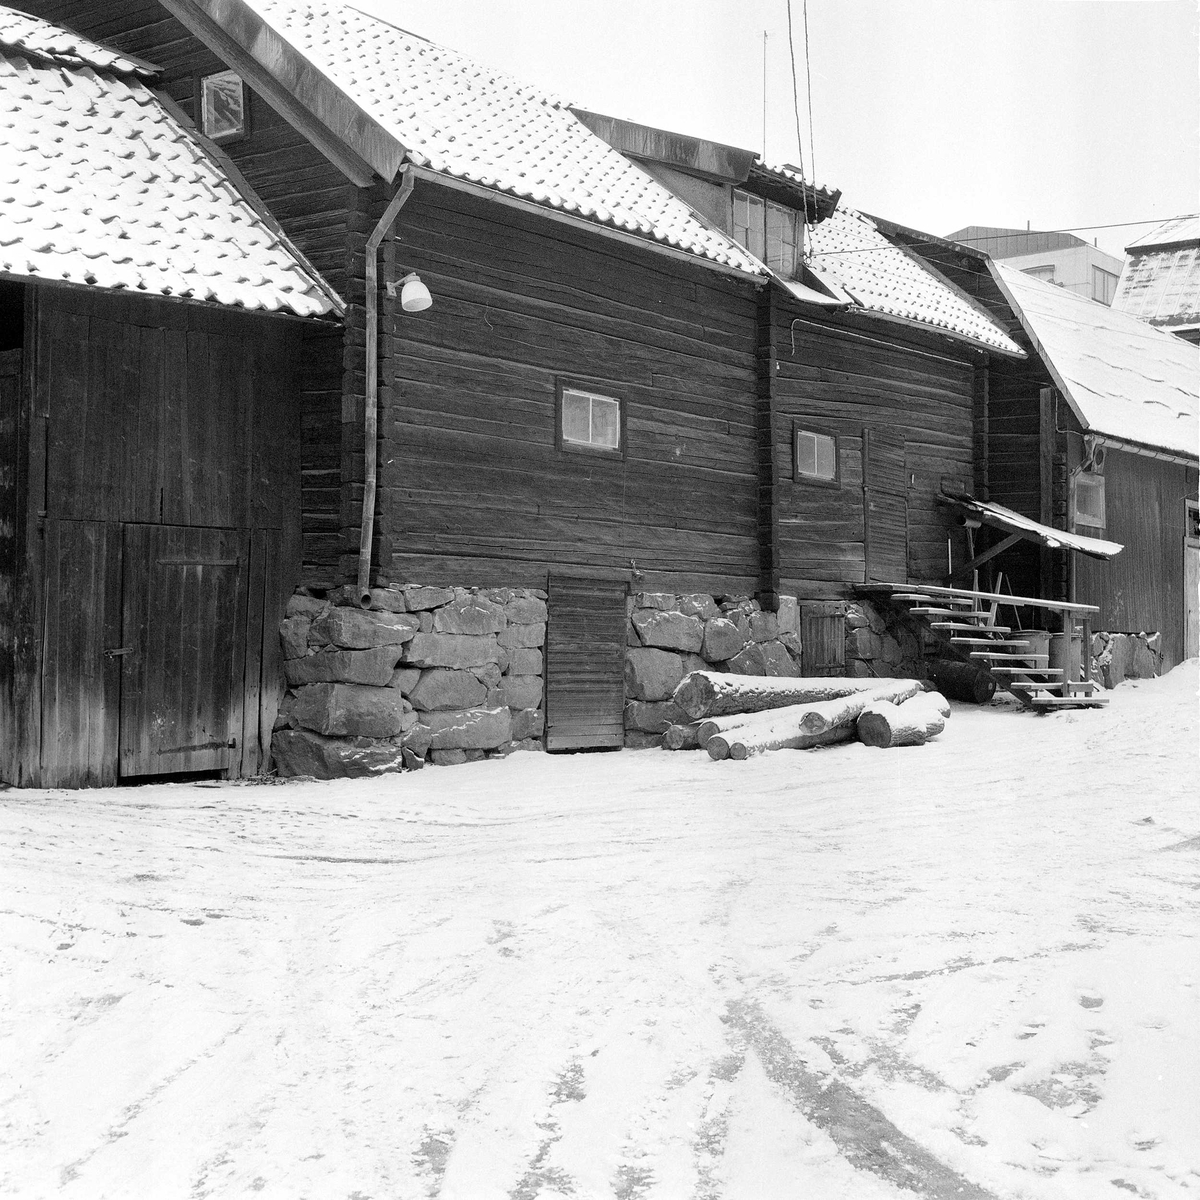 Del av bakgården.Byggnaden mitt i bild är "Magasinet" som flyttats till Vallby friluftsmuseum (även den så kallade "Hållstugan" flyttades dit). Övriga byggnader revs ca 1965 - 1968 för att ge plats åt varuhuset Punkt. Vy från sydost